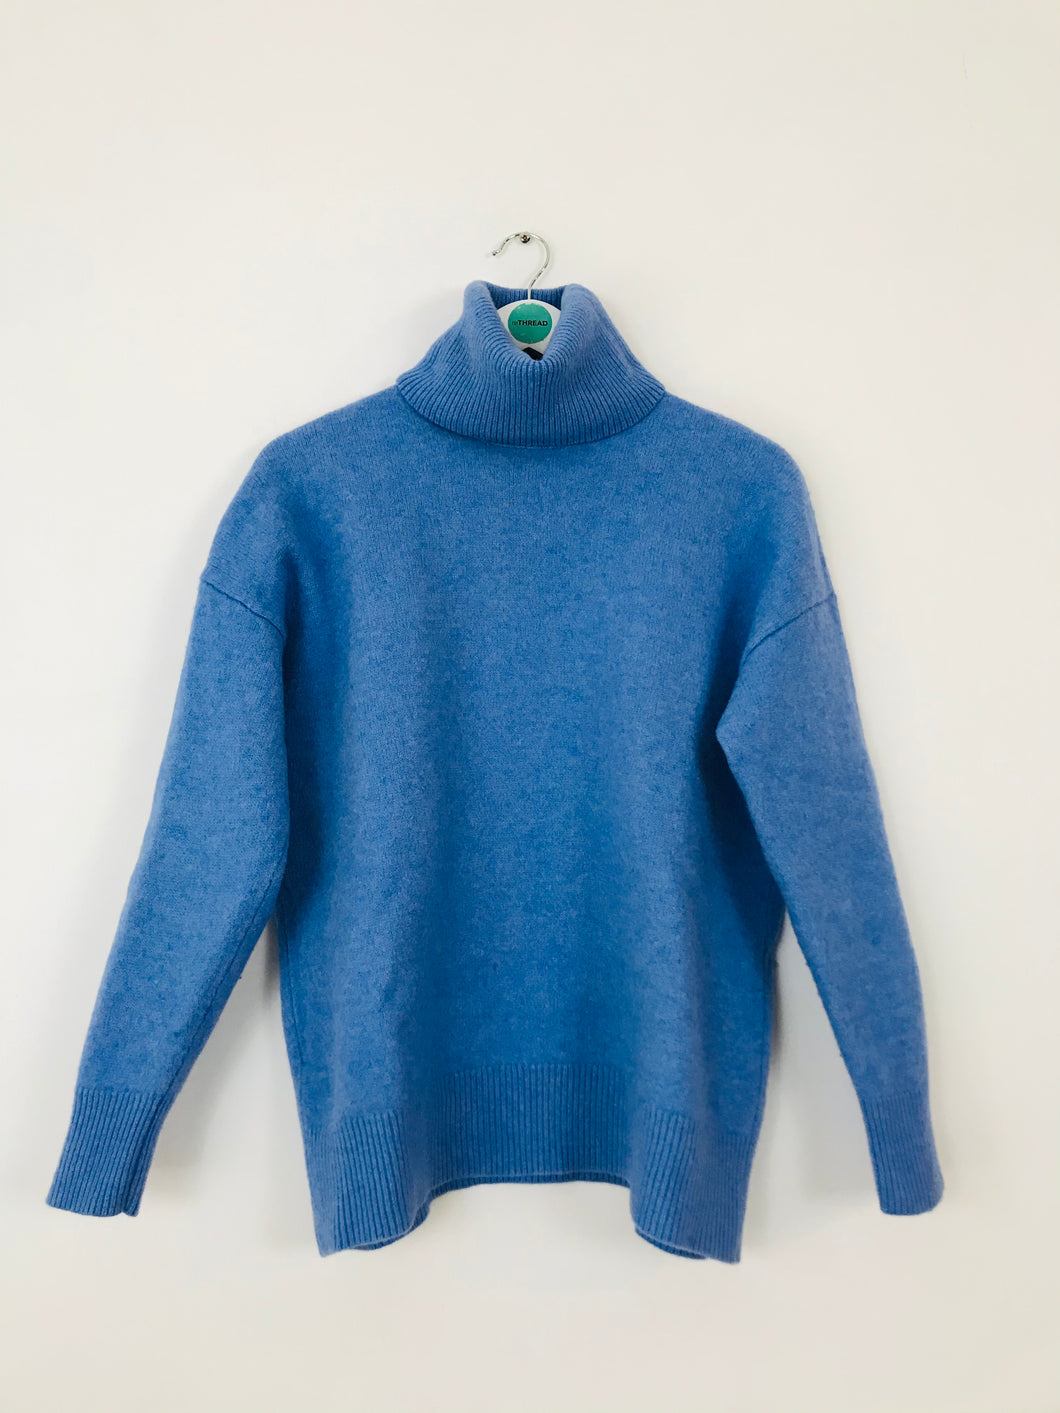 Zara Women’s Wool Roll Neck Jumper | M UK10 | Blue